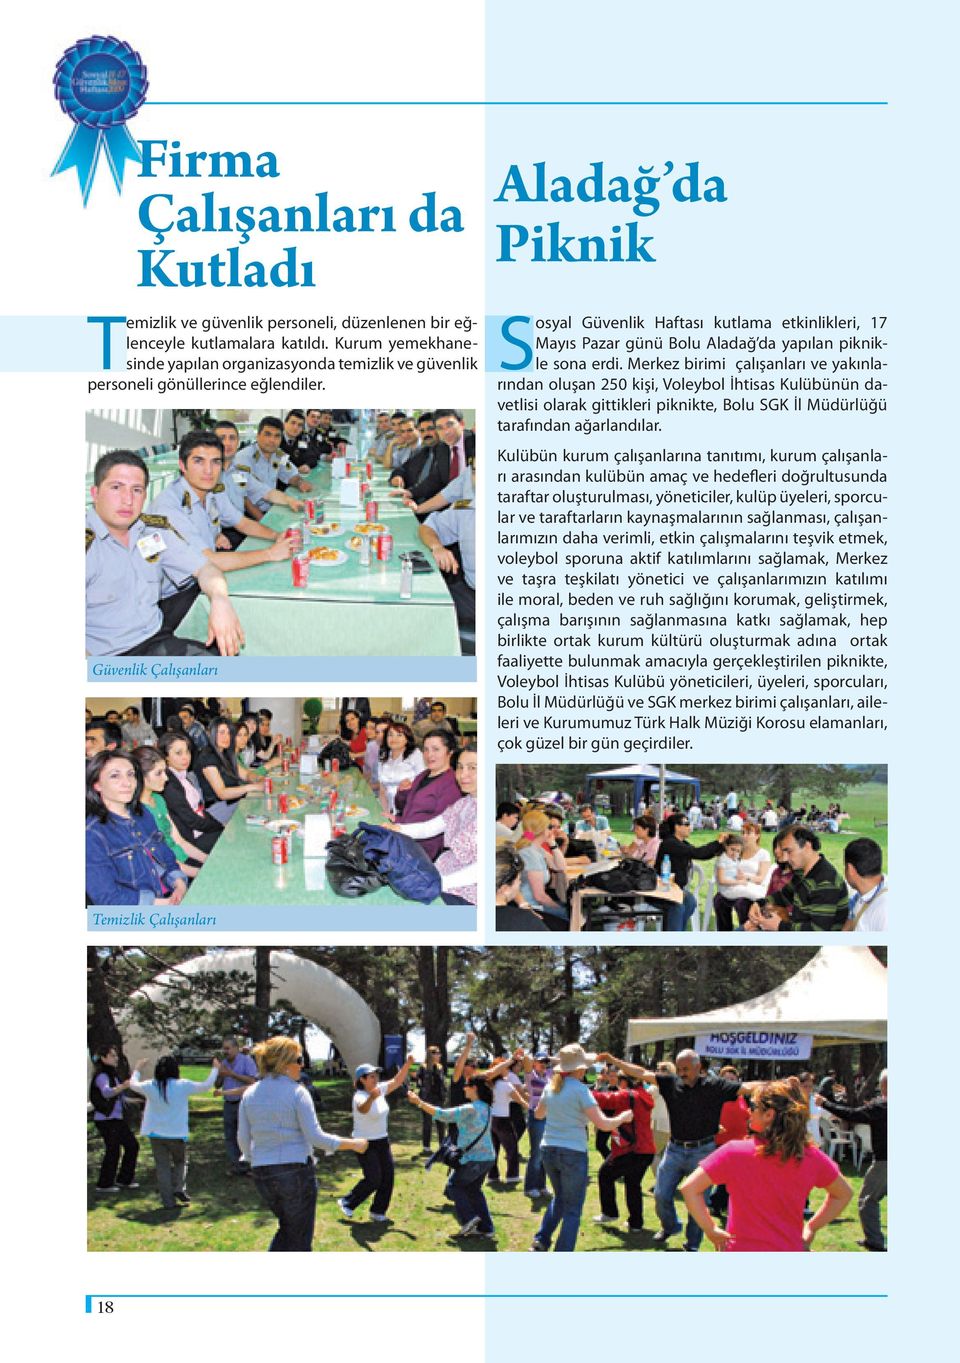 Güvenlik Çalışanları Aladağ da Piknik Sosyal Güvenlik Haftası kutlama etkinlikleri, 17 Mayıs Pazar günü Bolu Aladağ da yapılan piknikle sona erdi.